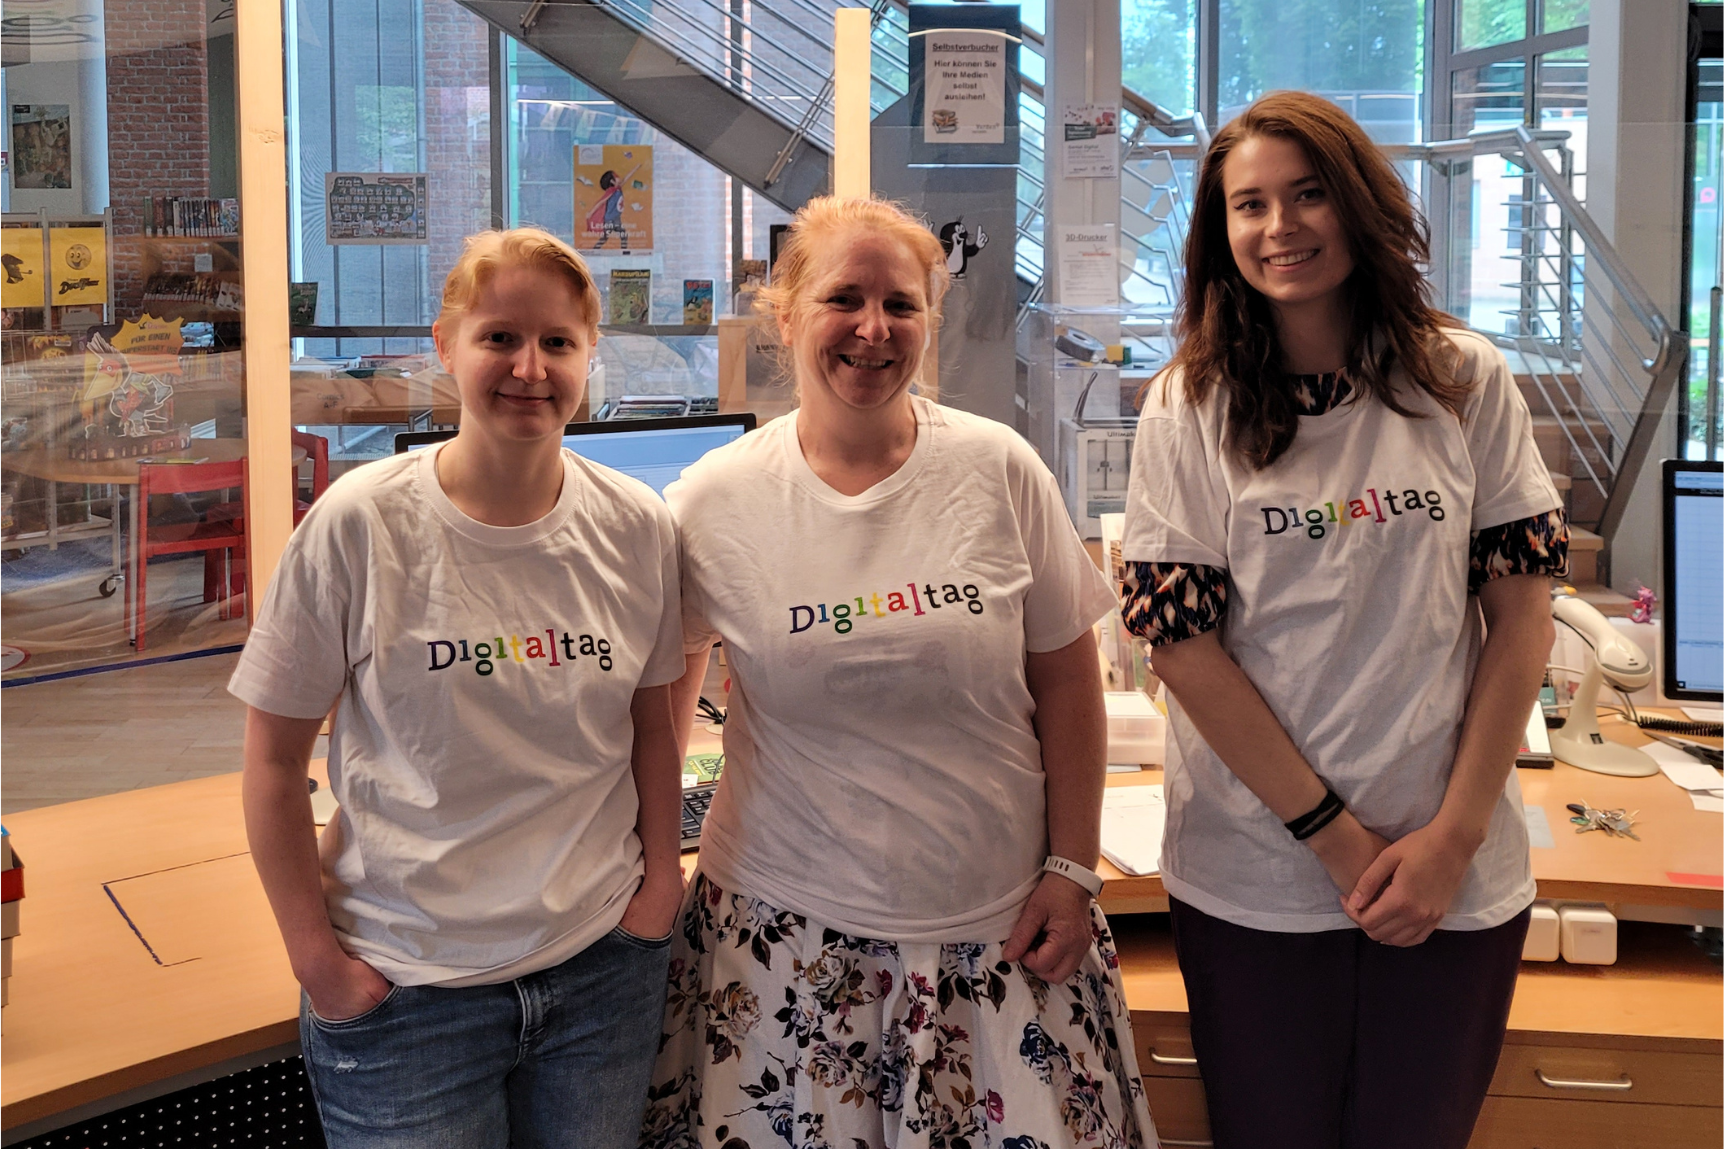 Drei Mitarbeiterinnen einer Bibliothek stragen Digitaltag-T-Shirts